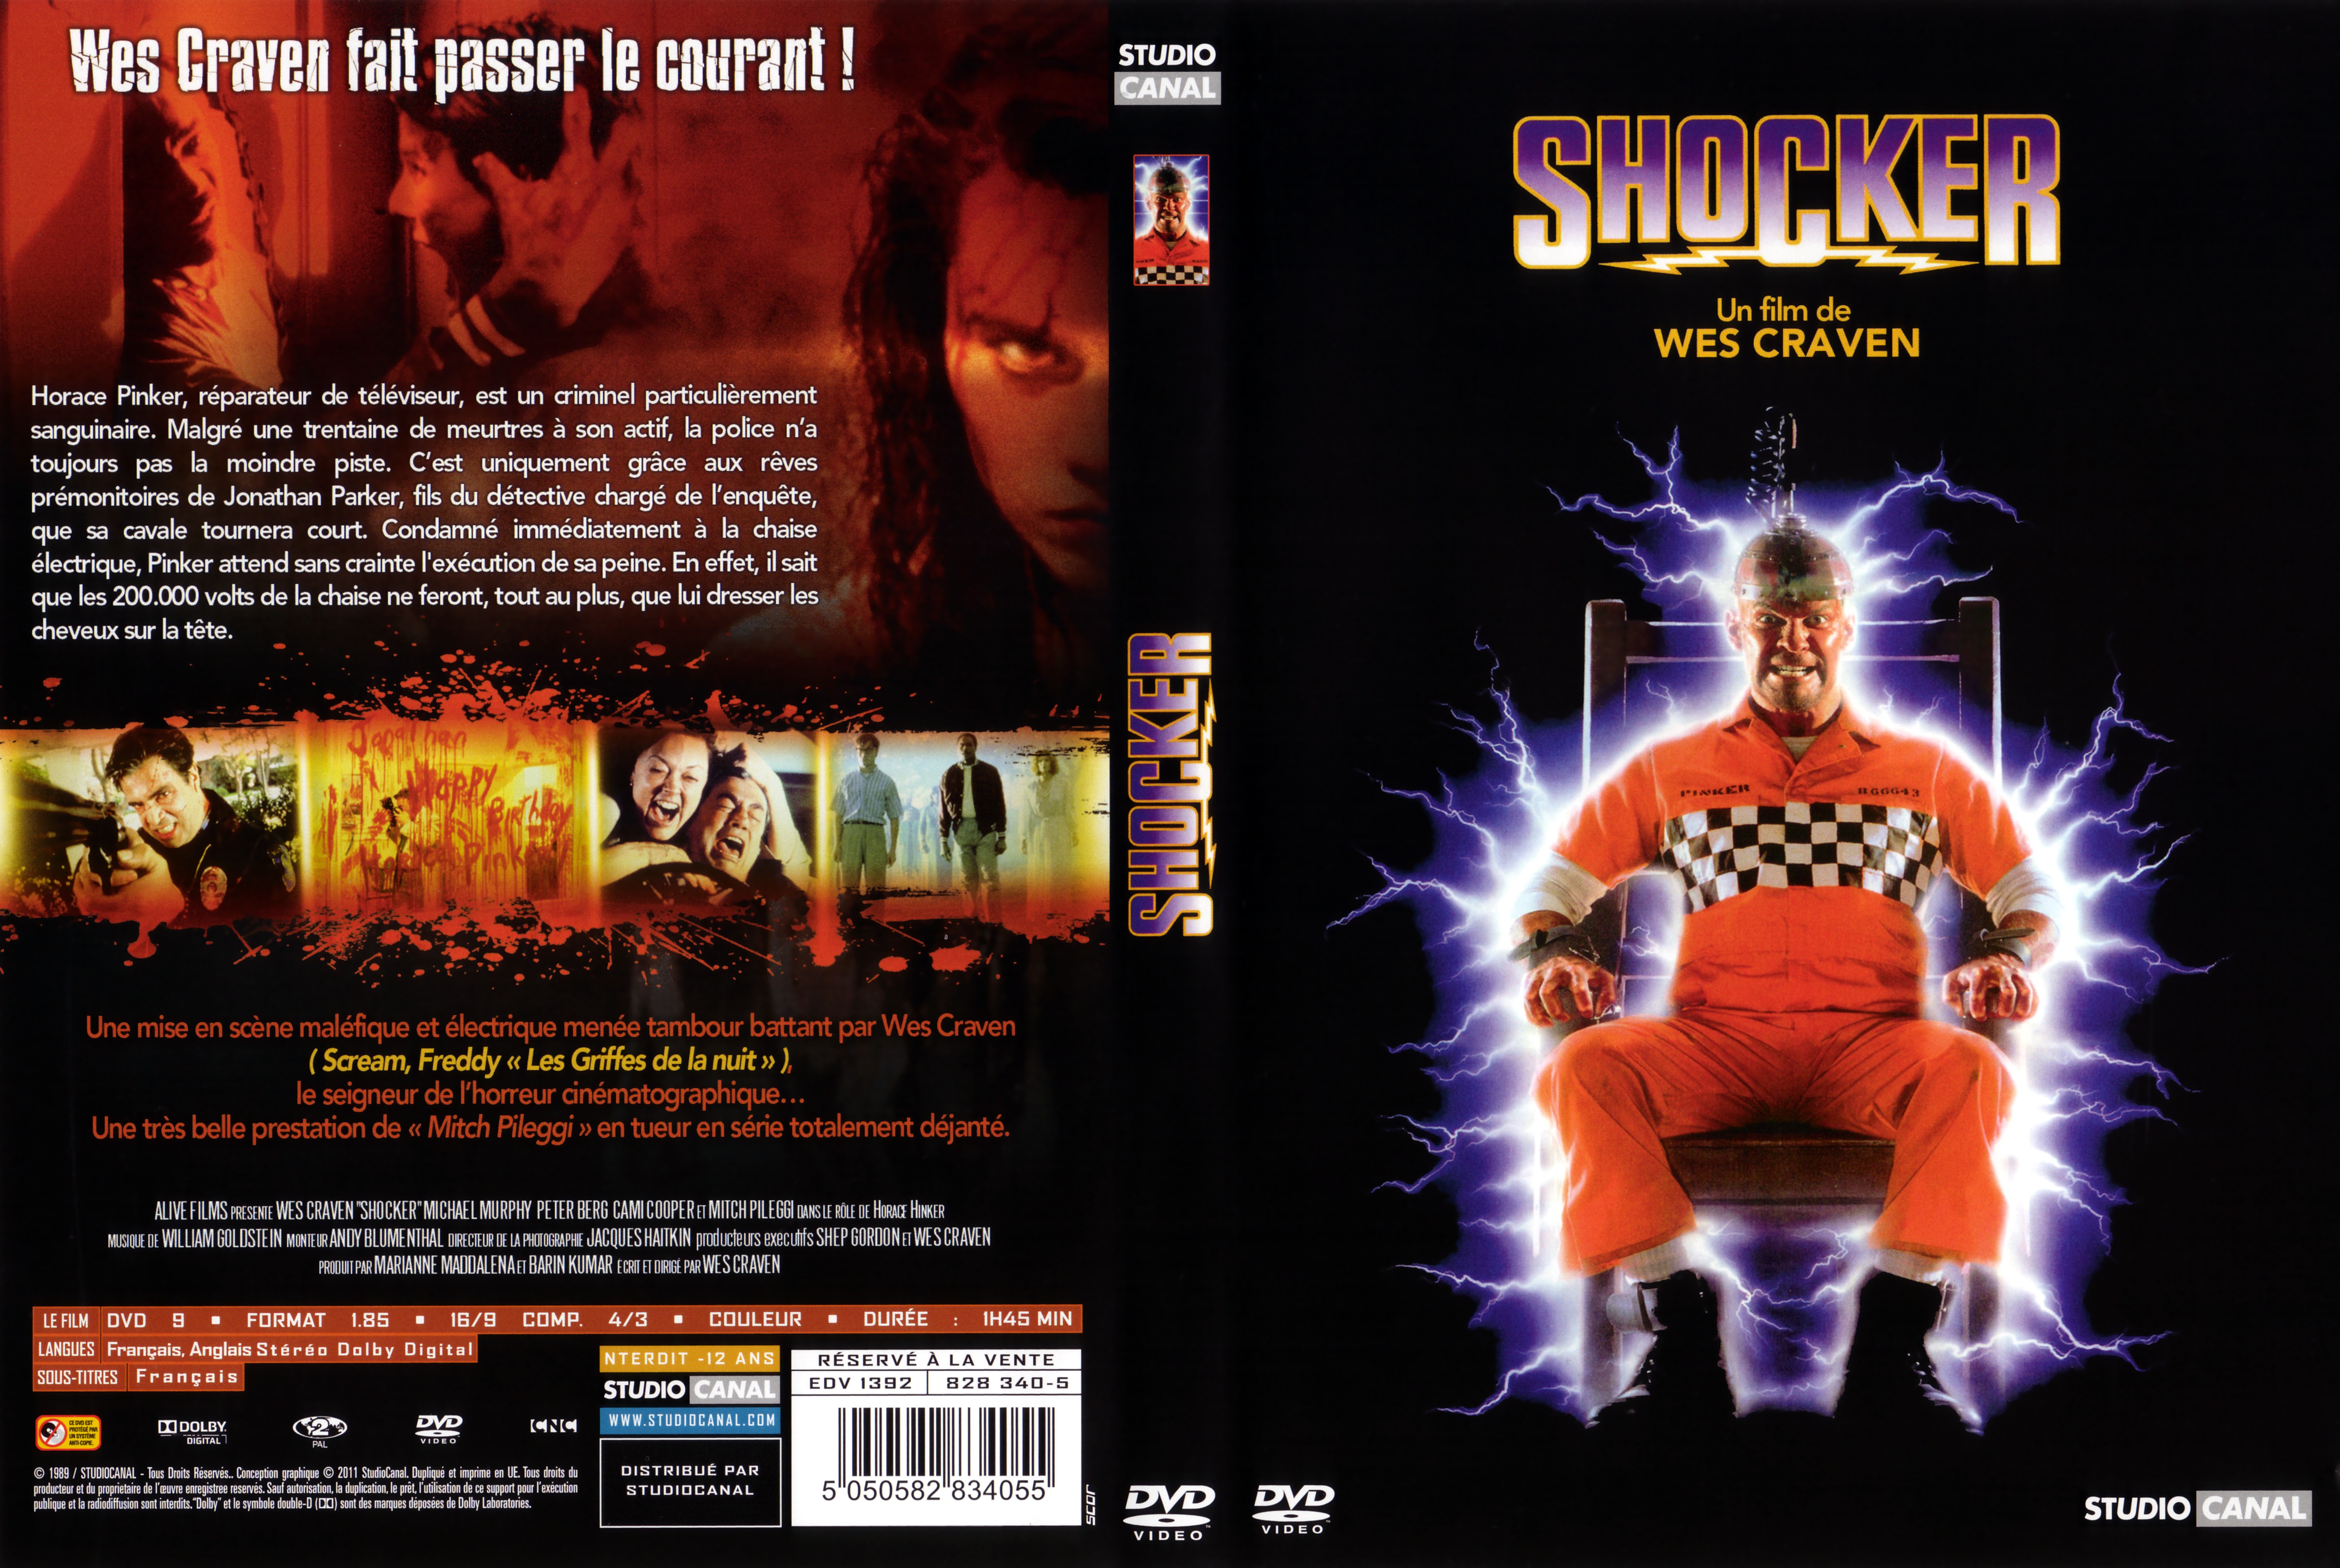 Jaquette DVD Shocker v3